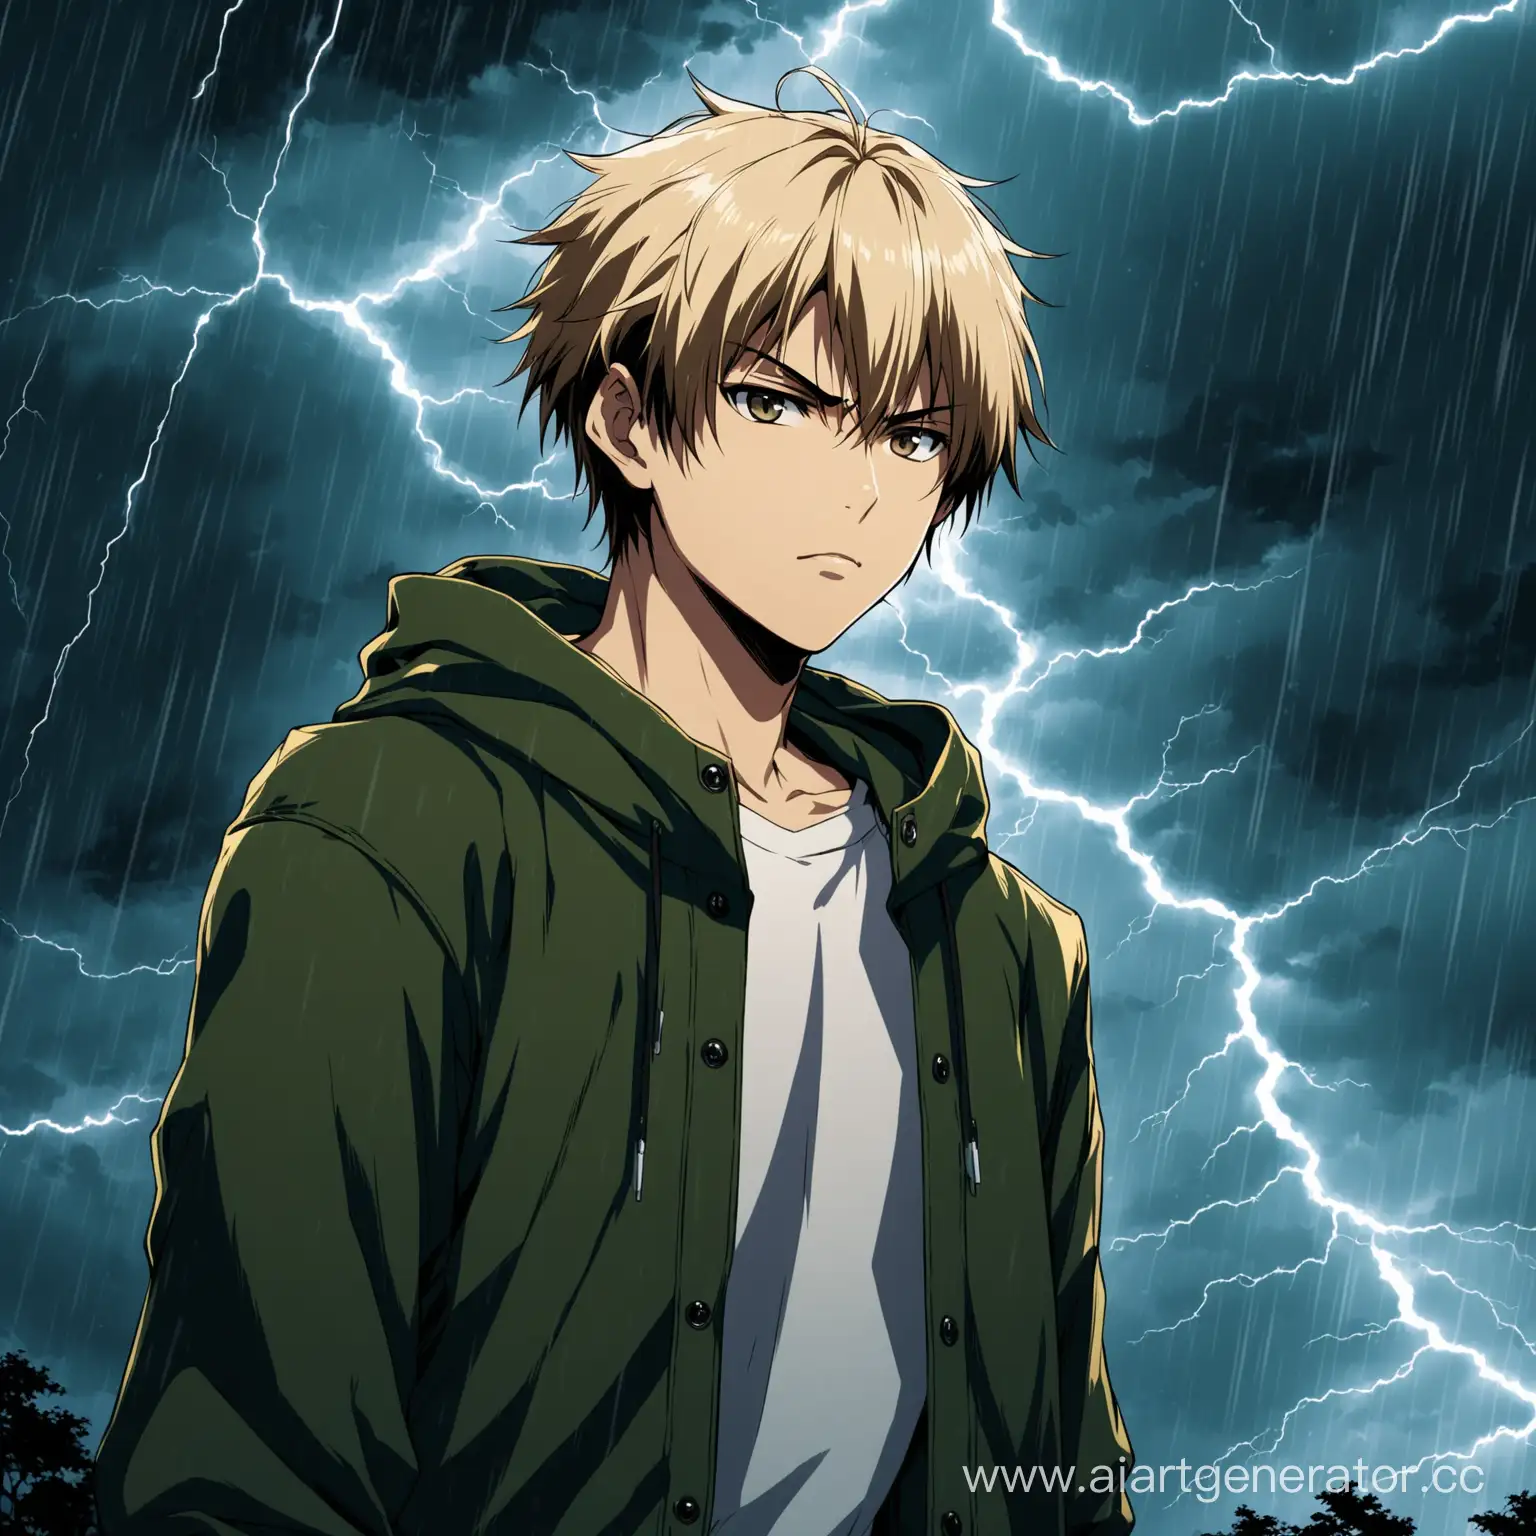 Светловолосый, кареглазый молодой парень, на фоне грозовая буря и двухметровая рысь, стиль аниме